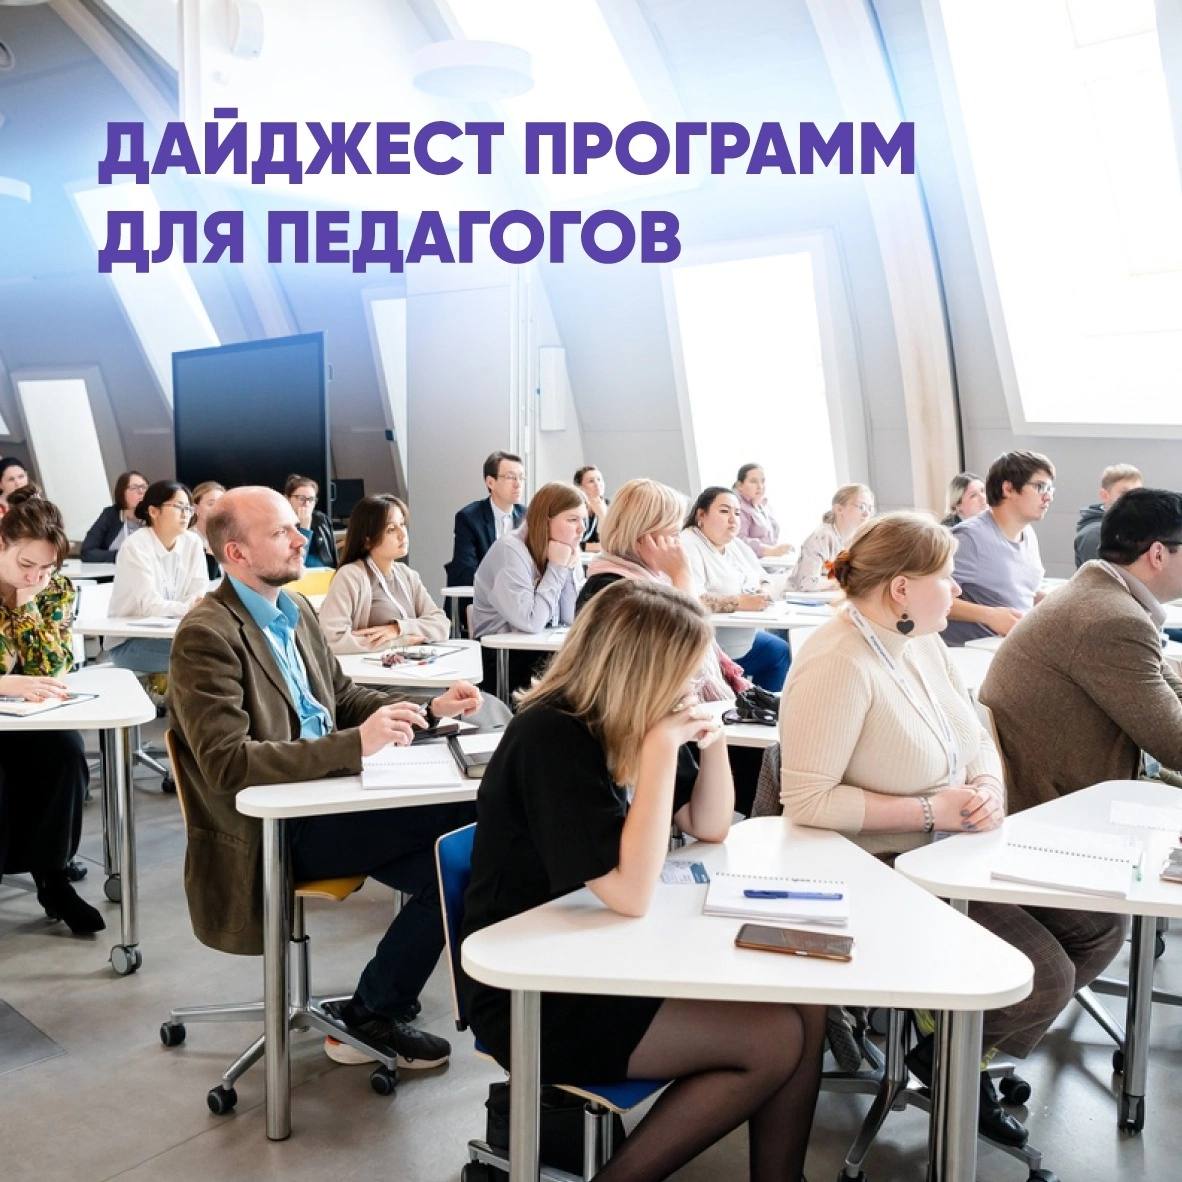 Белгородских педагогов приглашает на весенние стажировки и программы повышения квалификации «Сириус».